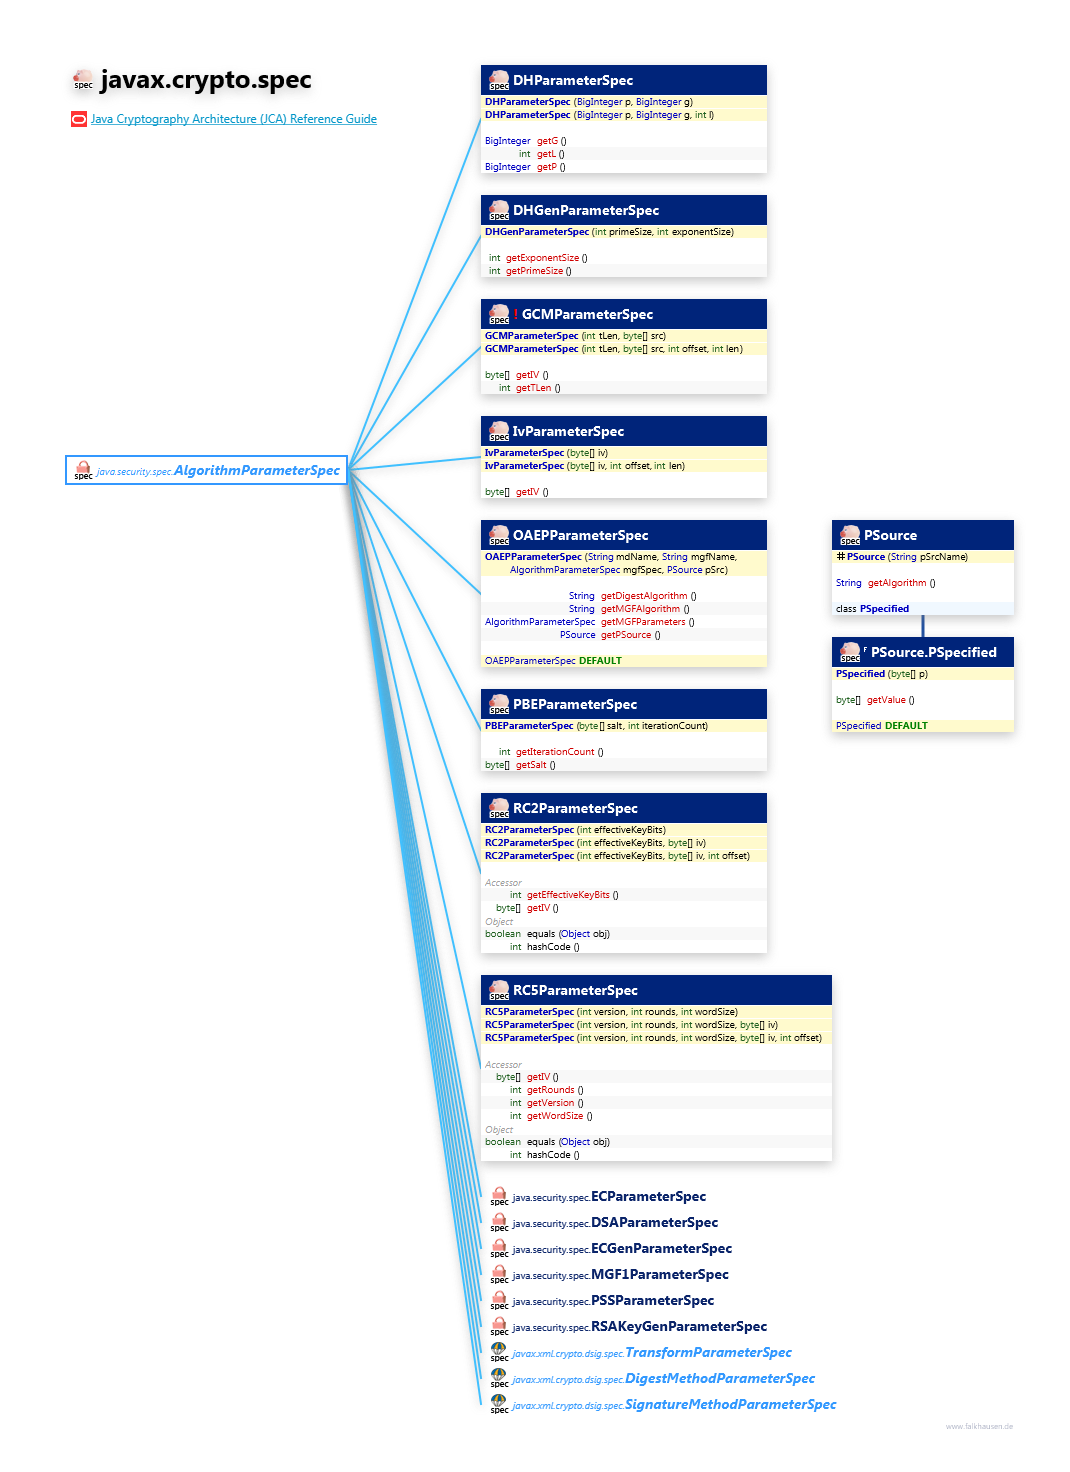 javax.crypto.spec ParameterSpec class diagram and api documentation for Java 7